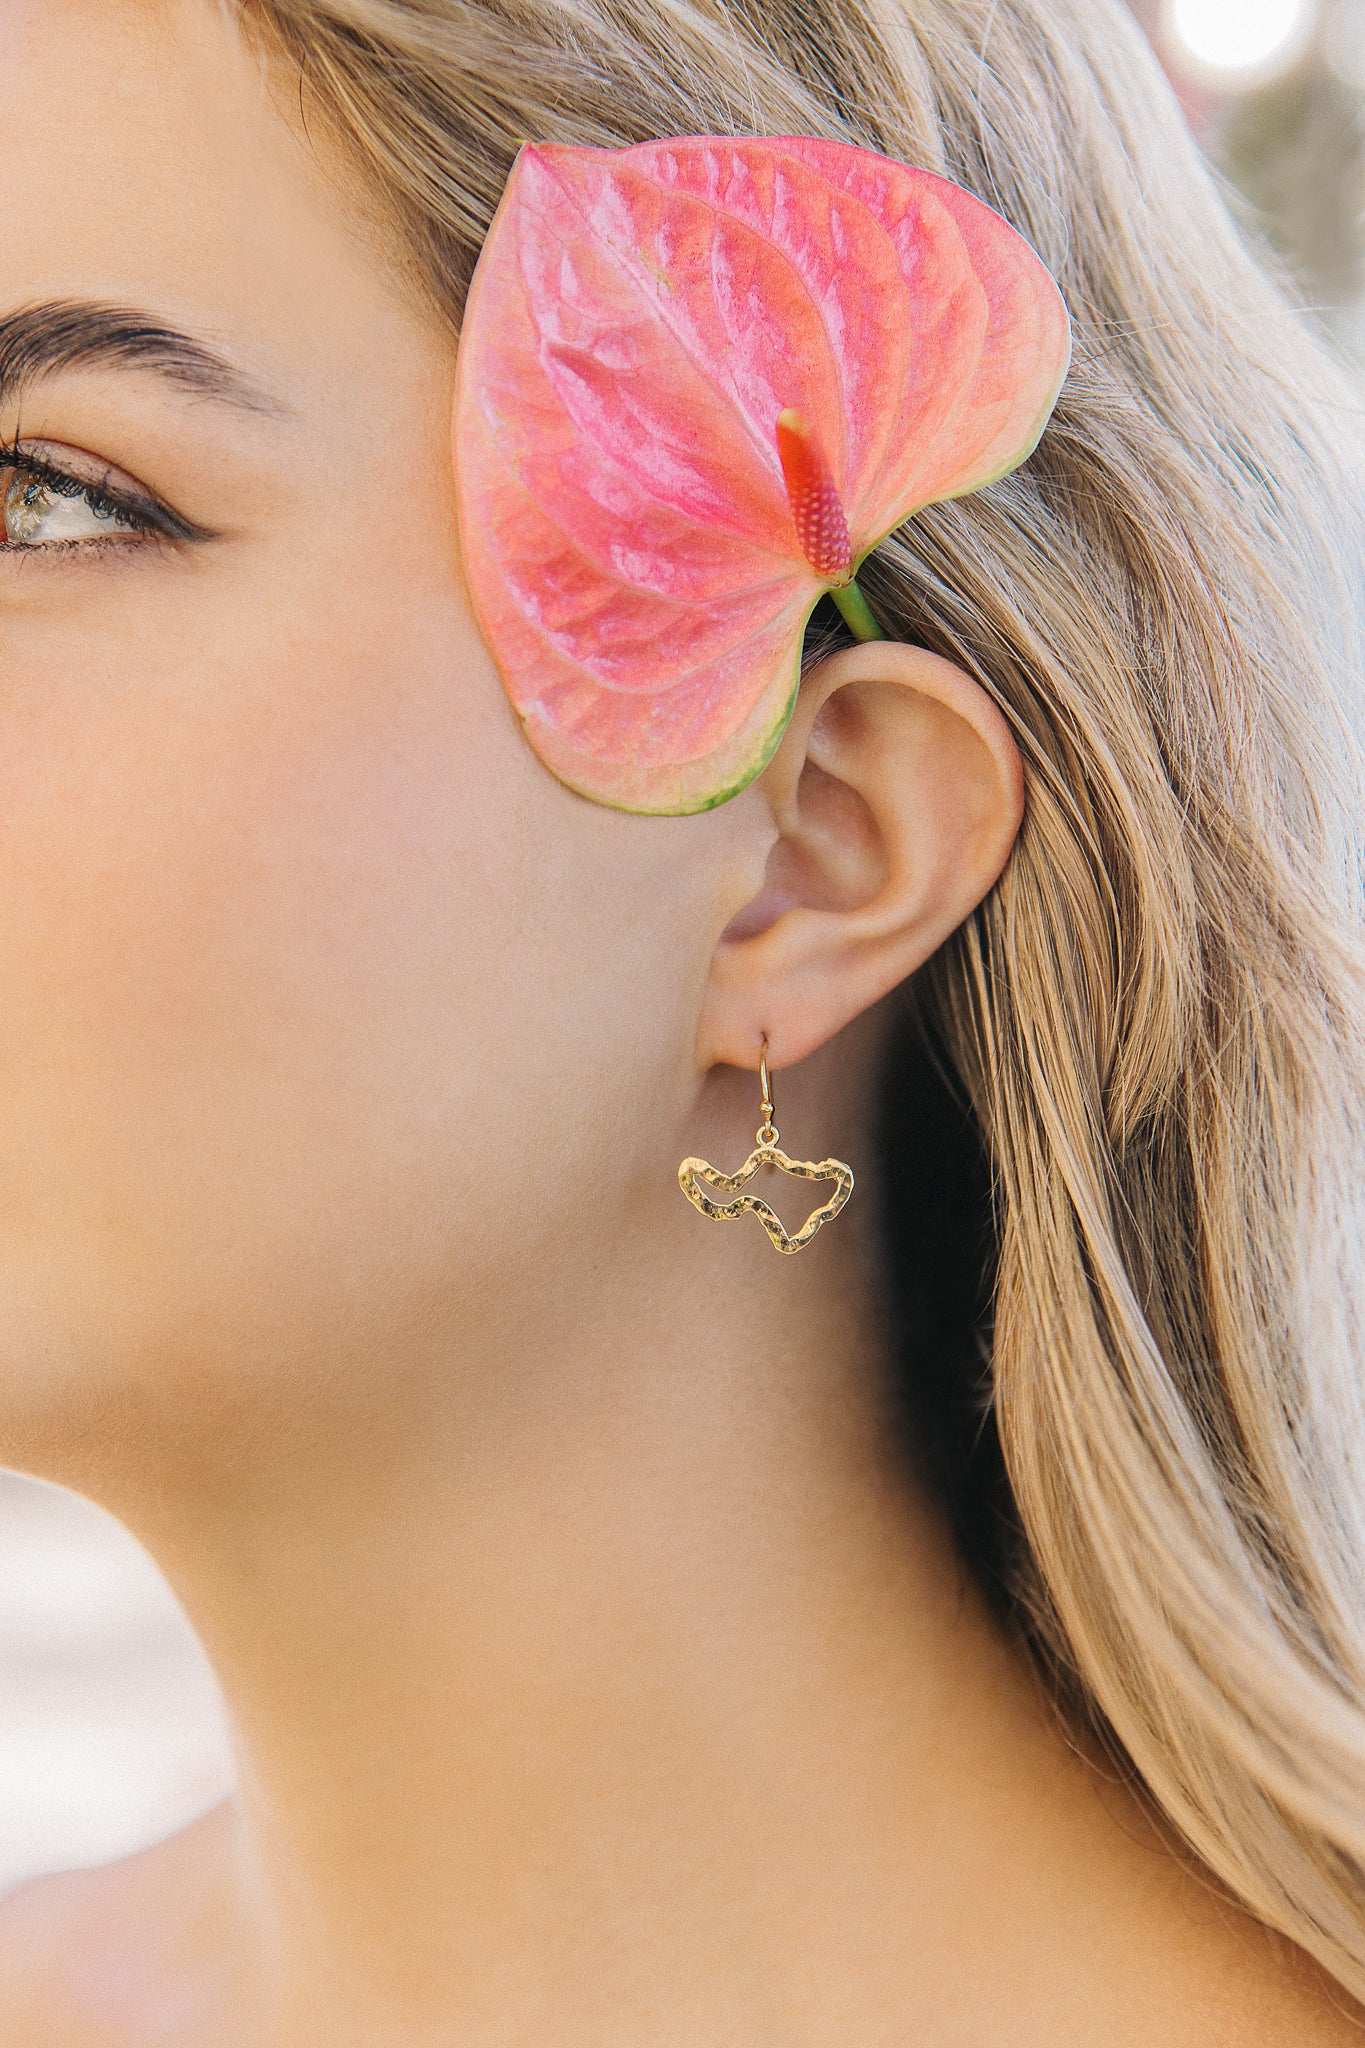 20% to Maui Food Bank — Maui Petite Silhouette drop earrings